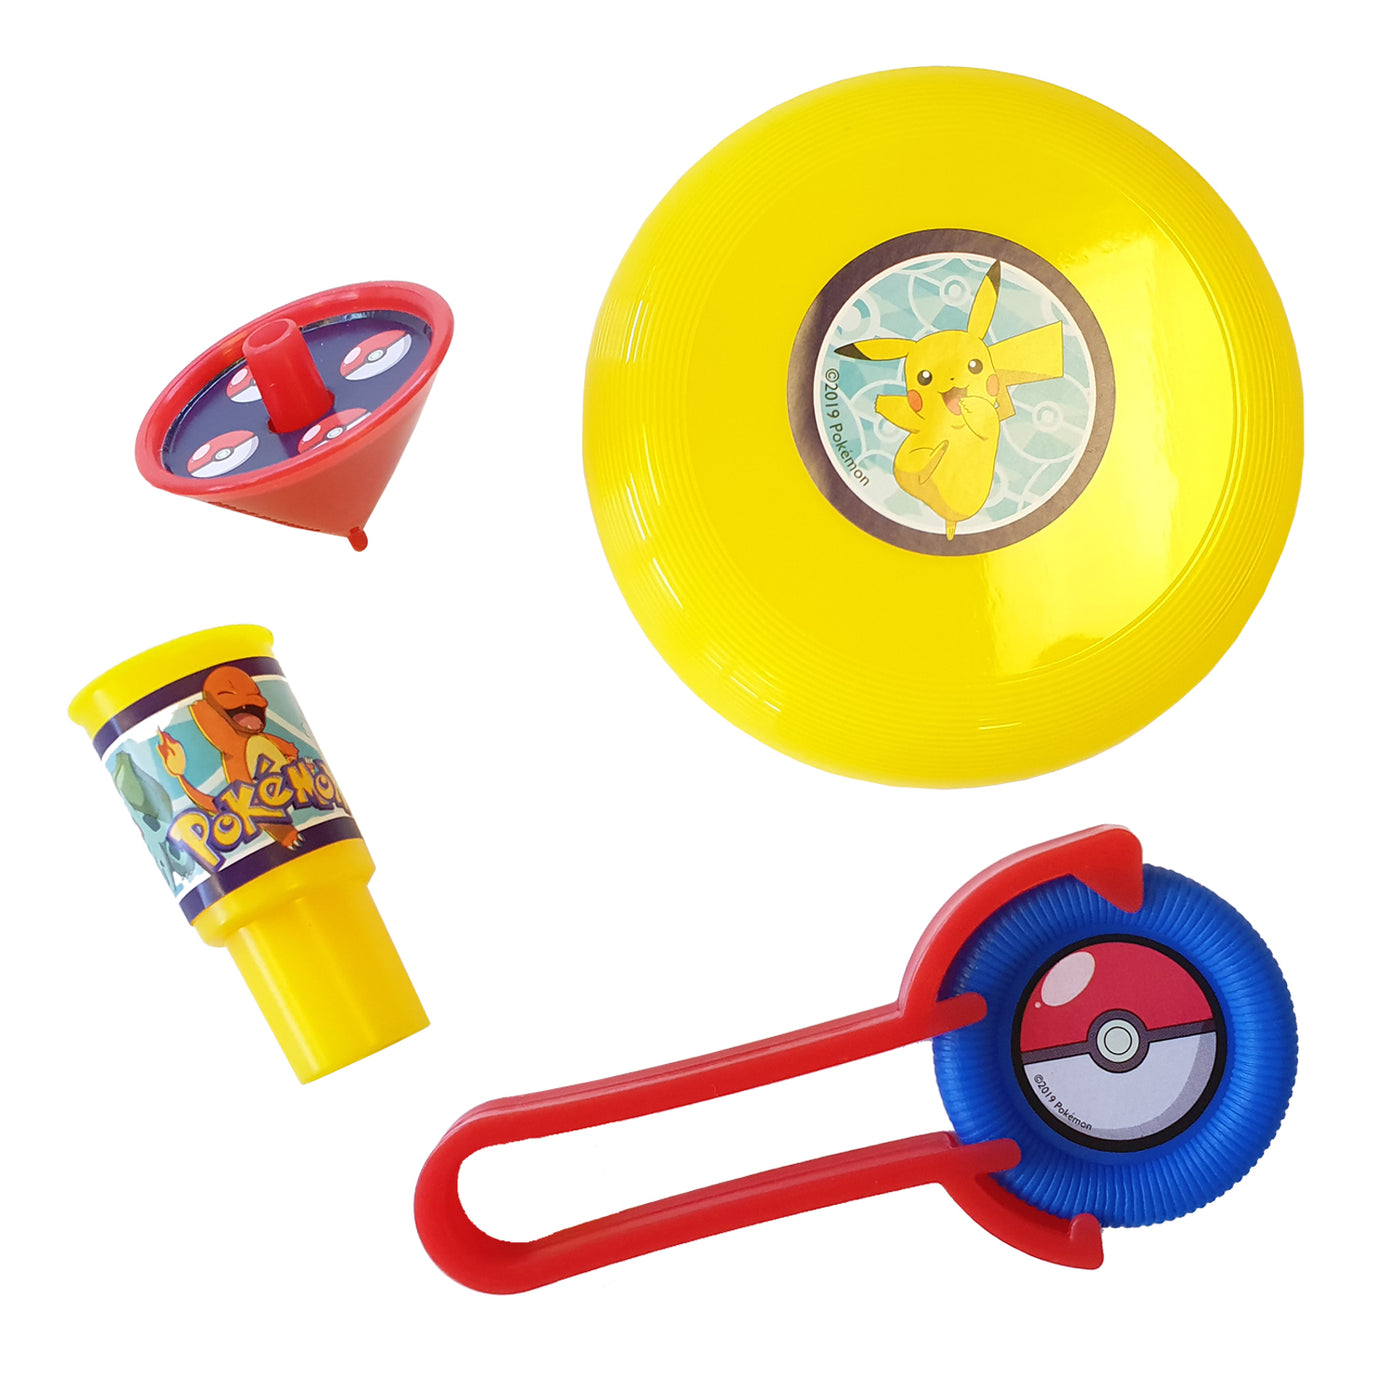 Party-Geschenke Set Pokemon, für 6 Kinder, 24-tlg, Mitgebsel, Gastgeschenk, Giva-away, Spielzeug, Kindergeburtstag, Motto-Party